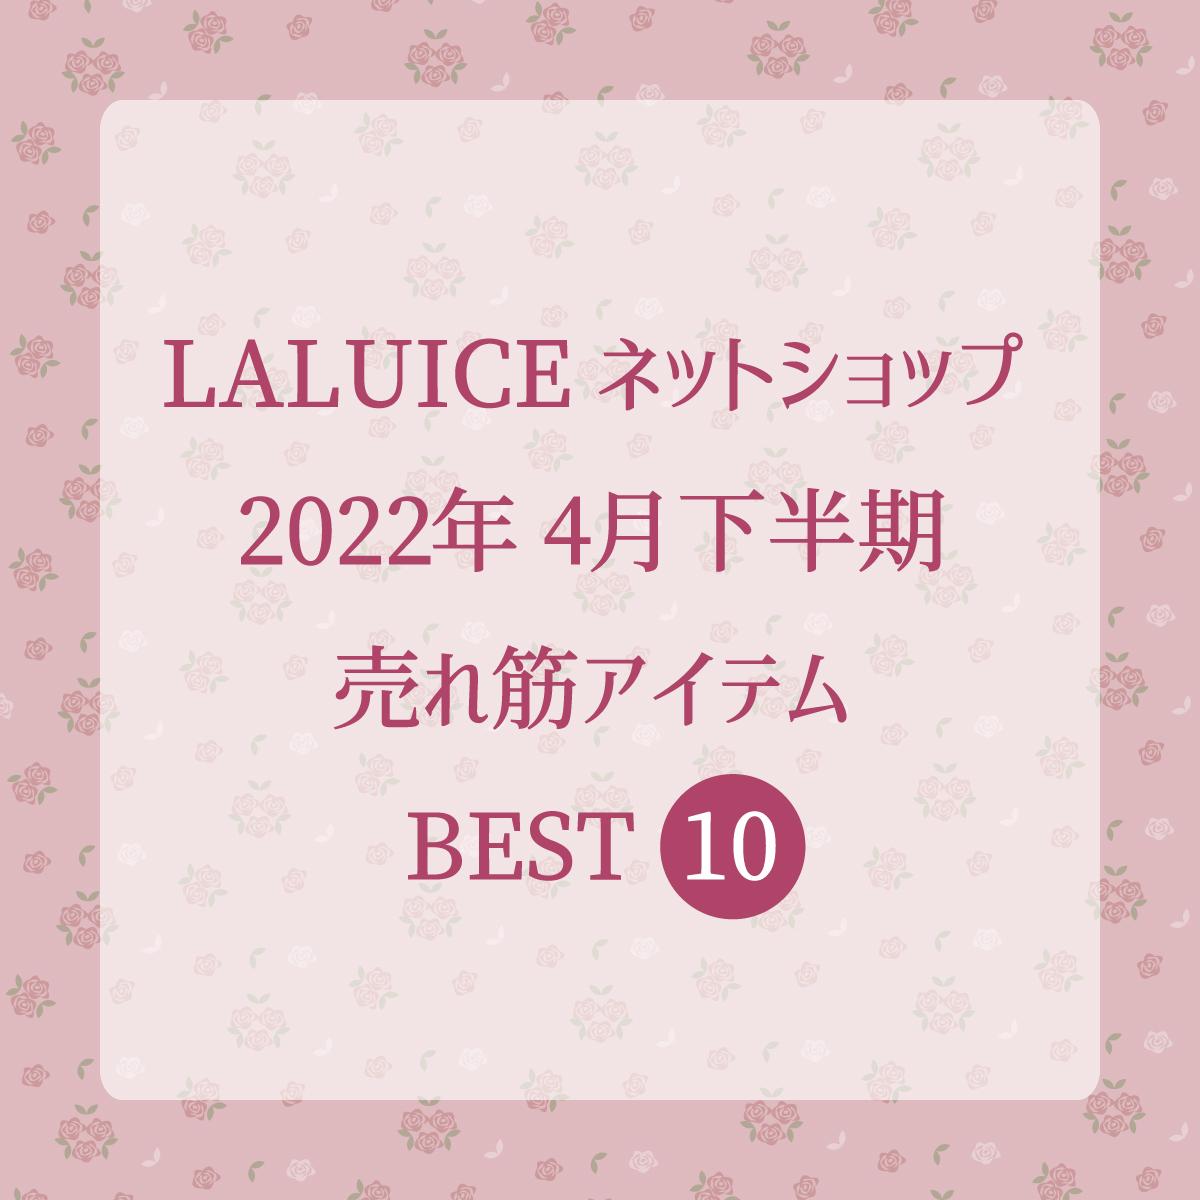 2022年4月下半期(4/16～4/30) LALUICEネットショップ売れ筋アイテム BEST10